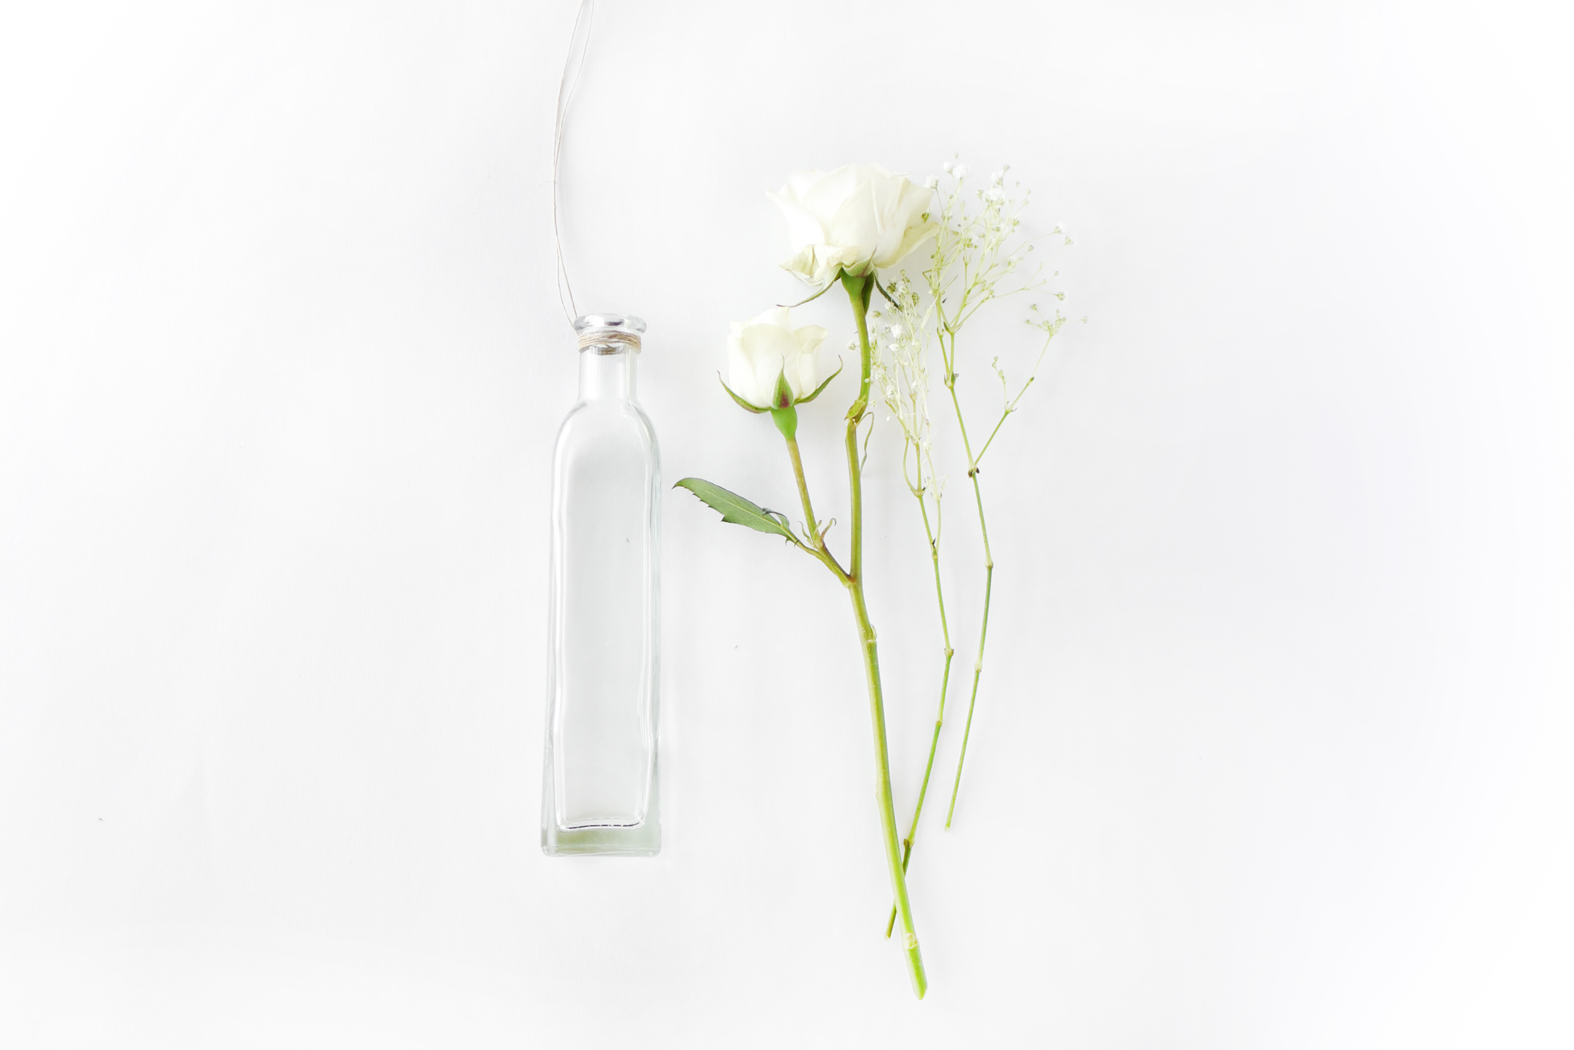 DIY Hanging Flower Vases